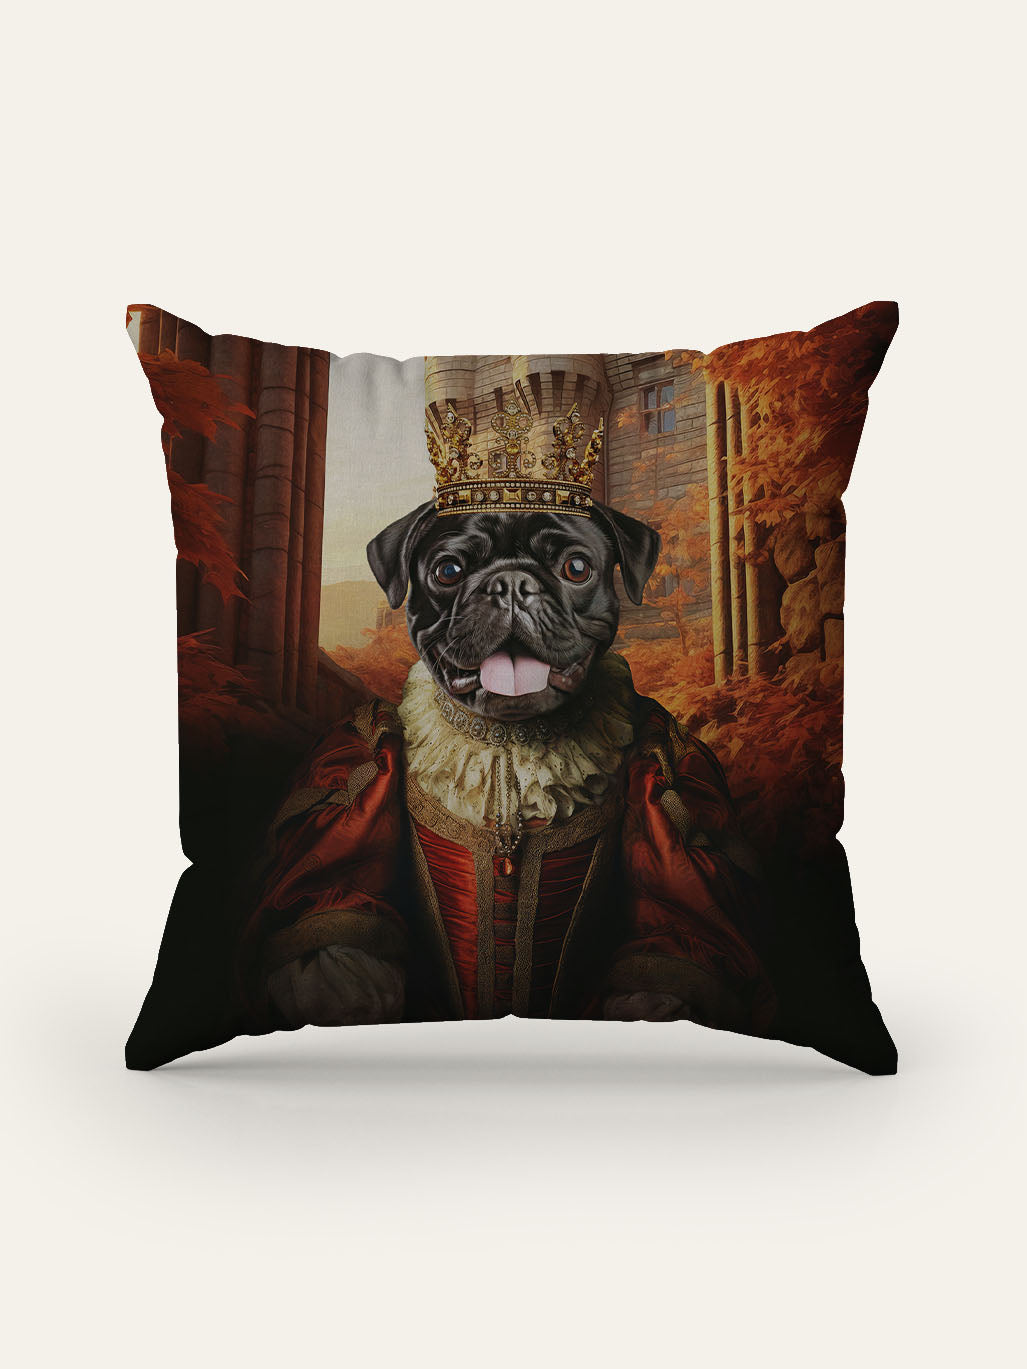 The Fearless Queen - Custom Pet Cushion